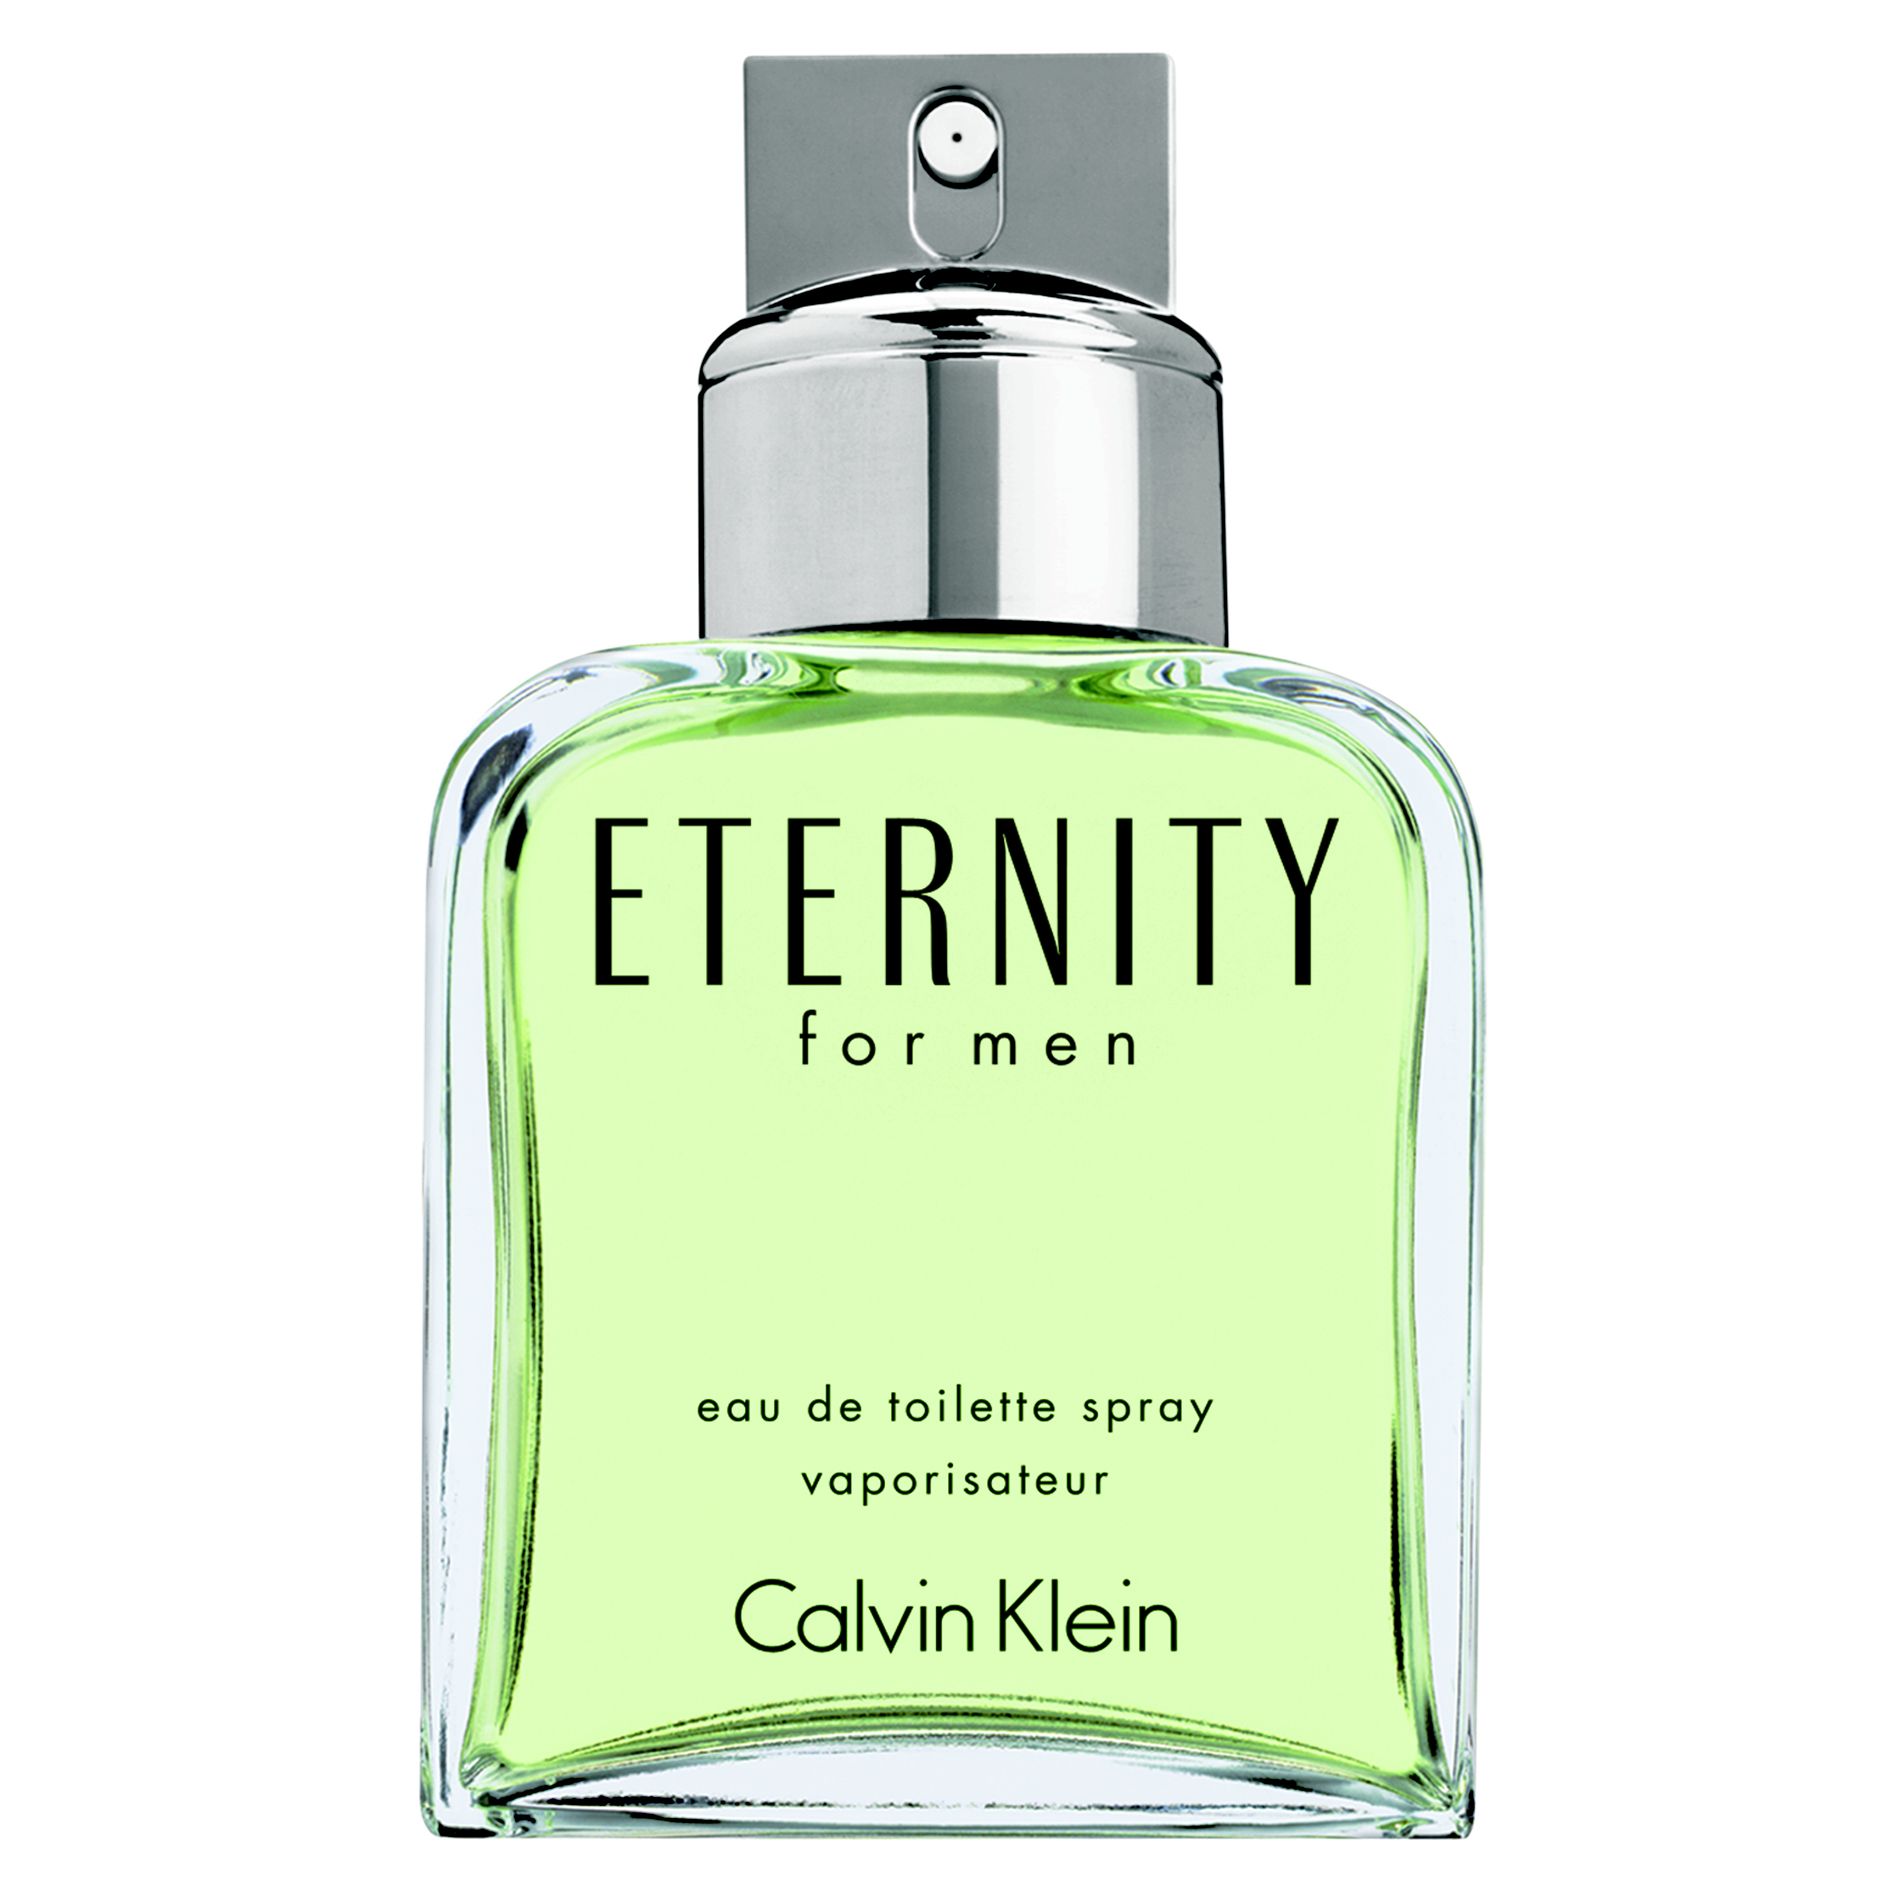 Eternity for Men 3.4 oz Eau de Toilette Spray